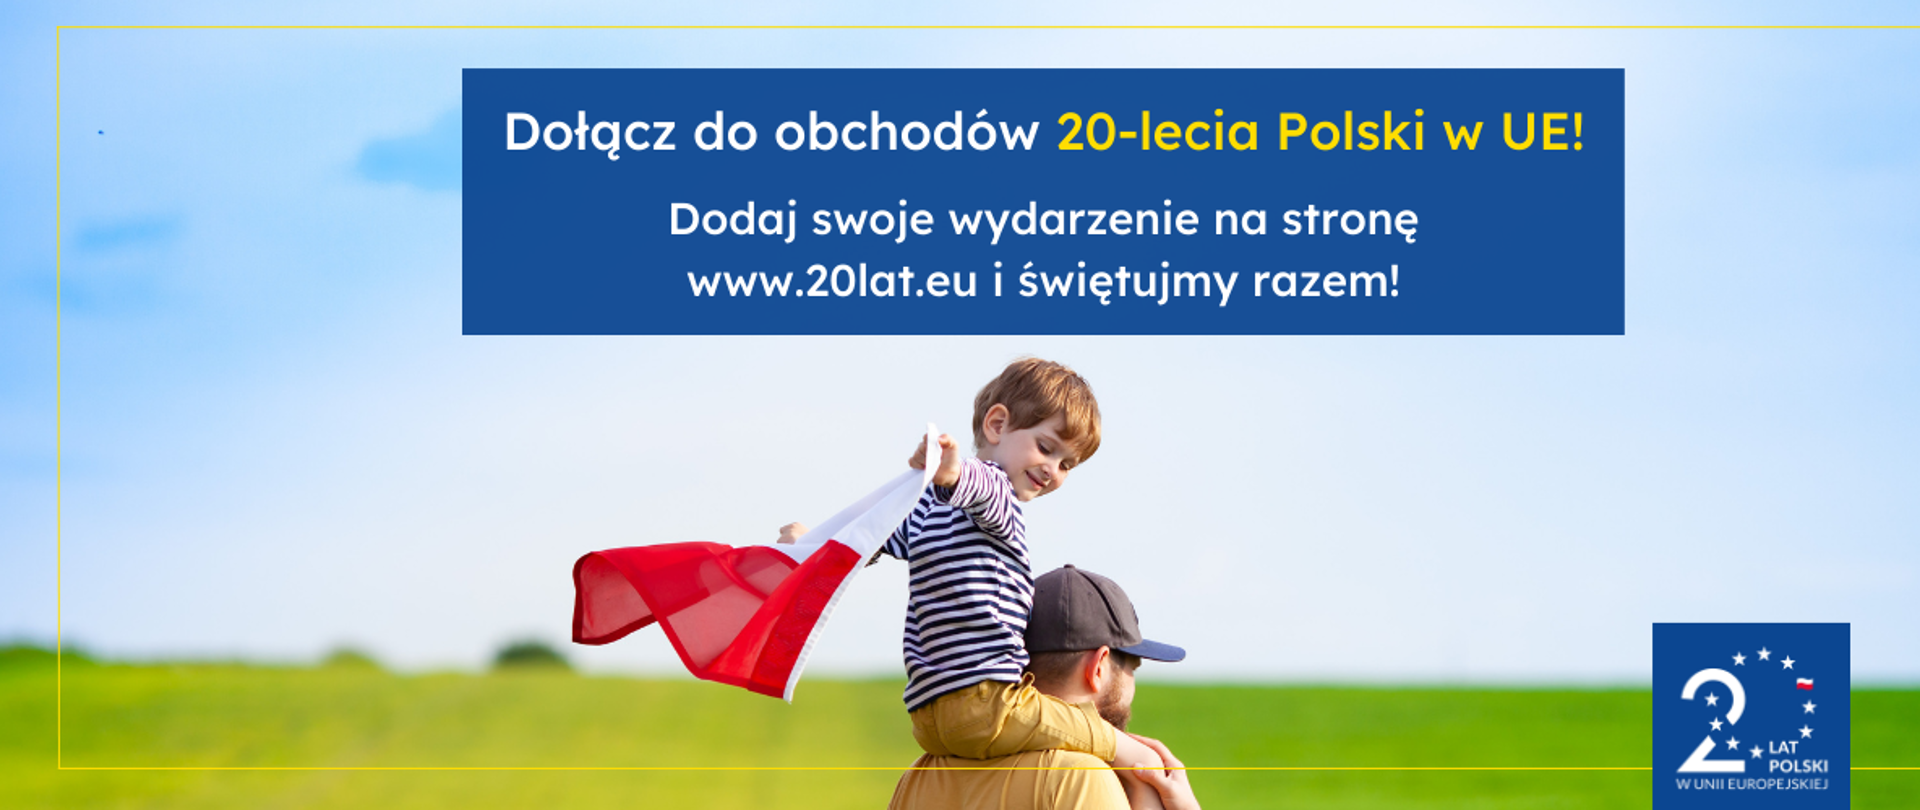 Grafika dekoracyjna przedstawiająca ok 4 letniego chłopca siedzącego na ramionach mężczyzny, trzymającego w rączkach powiewającą flagę Polski. W tle zielona łąka. Na górze informacja o obchodach 20-lecia Polski w UE, zachęcająca do dodawania swoich wydarzeń na dedykowanej stronie internetowej www.20lat.eu. Na dole logotyp 20-lecia UE. 